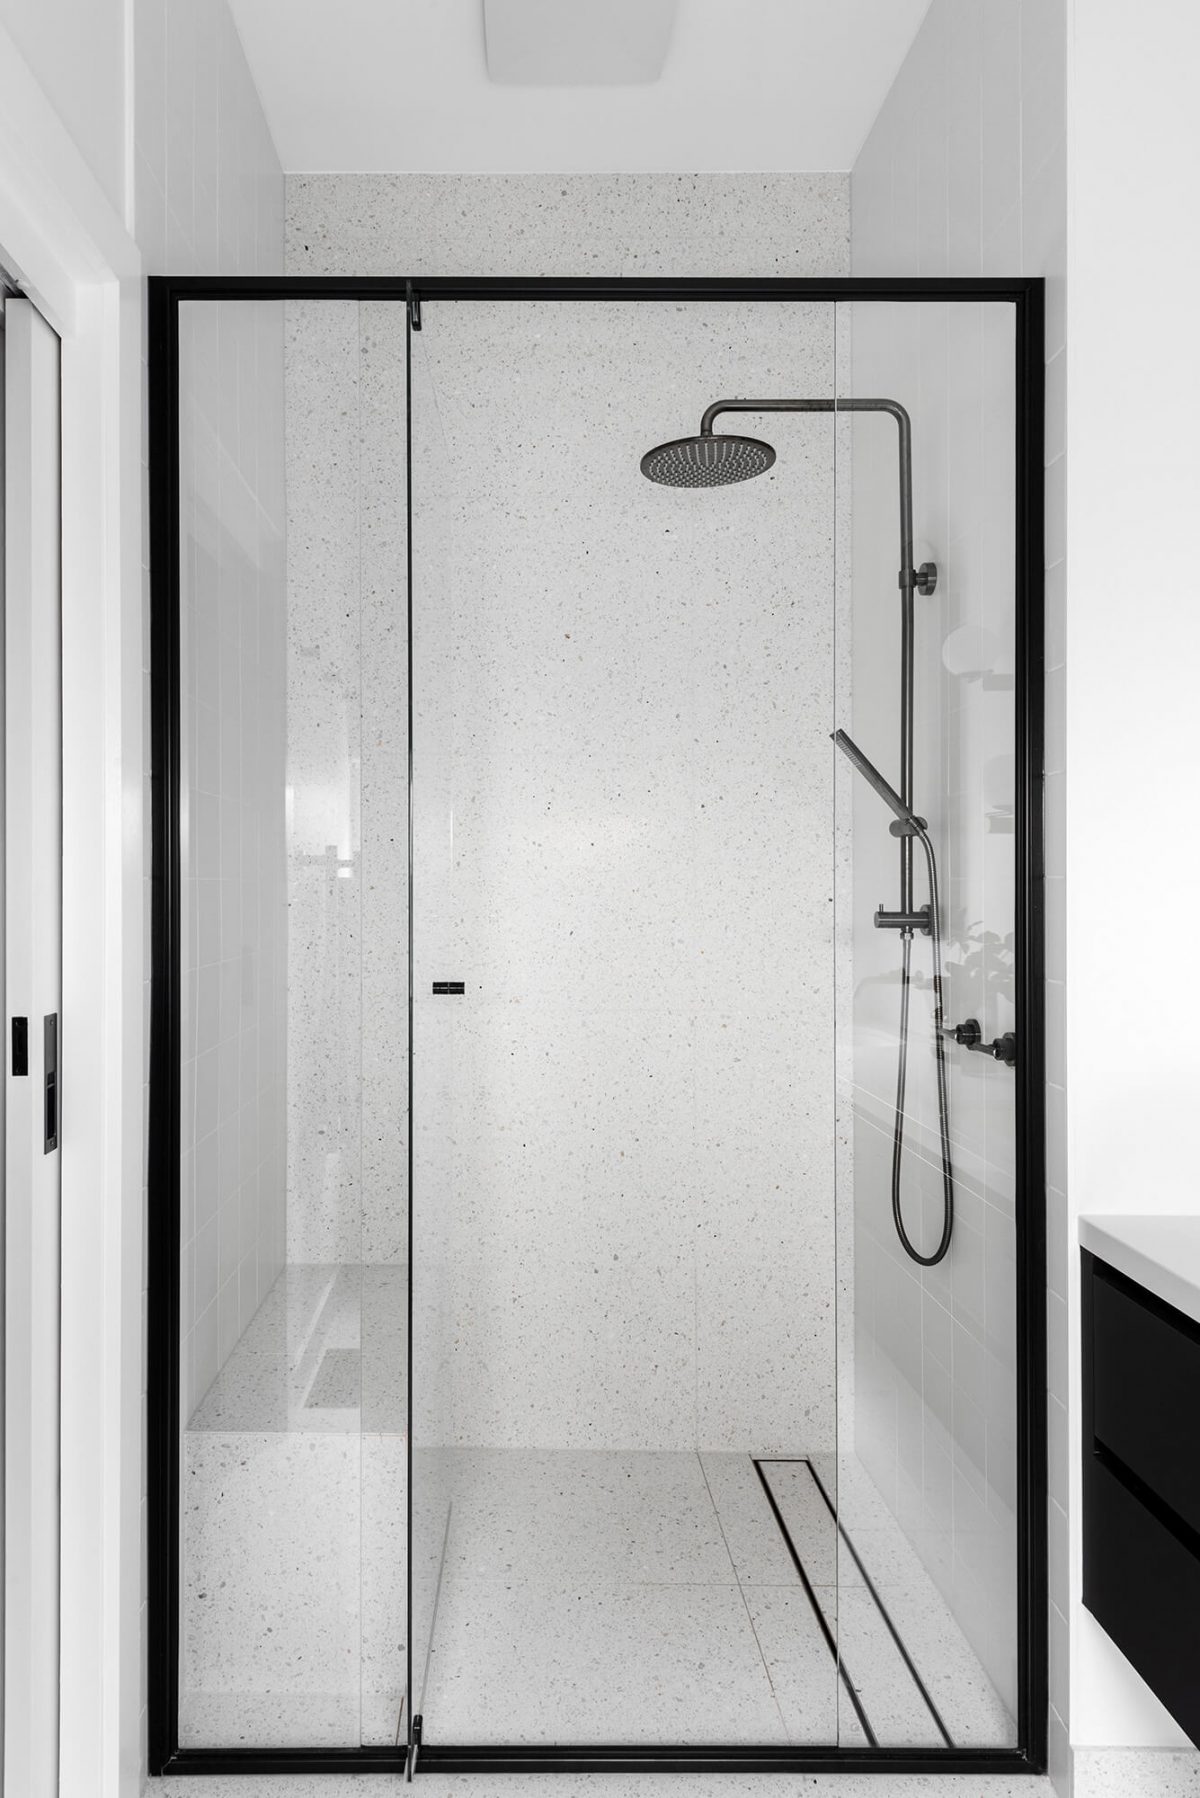 Shower Bathroom Renovation Gunmetal Fixtures Terrazzo Tile Shower Seat